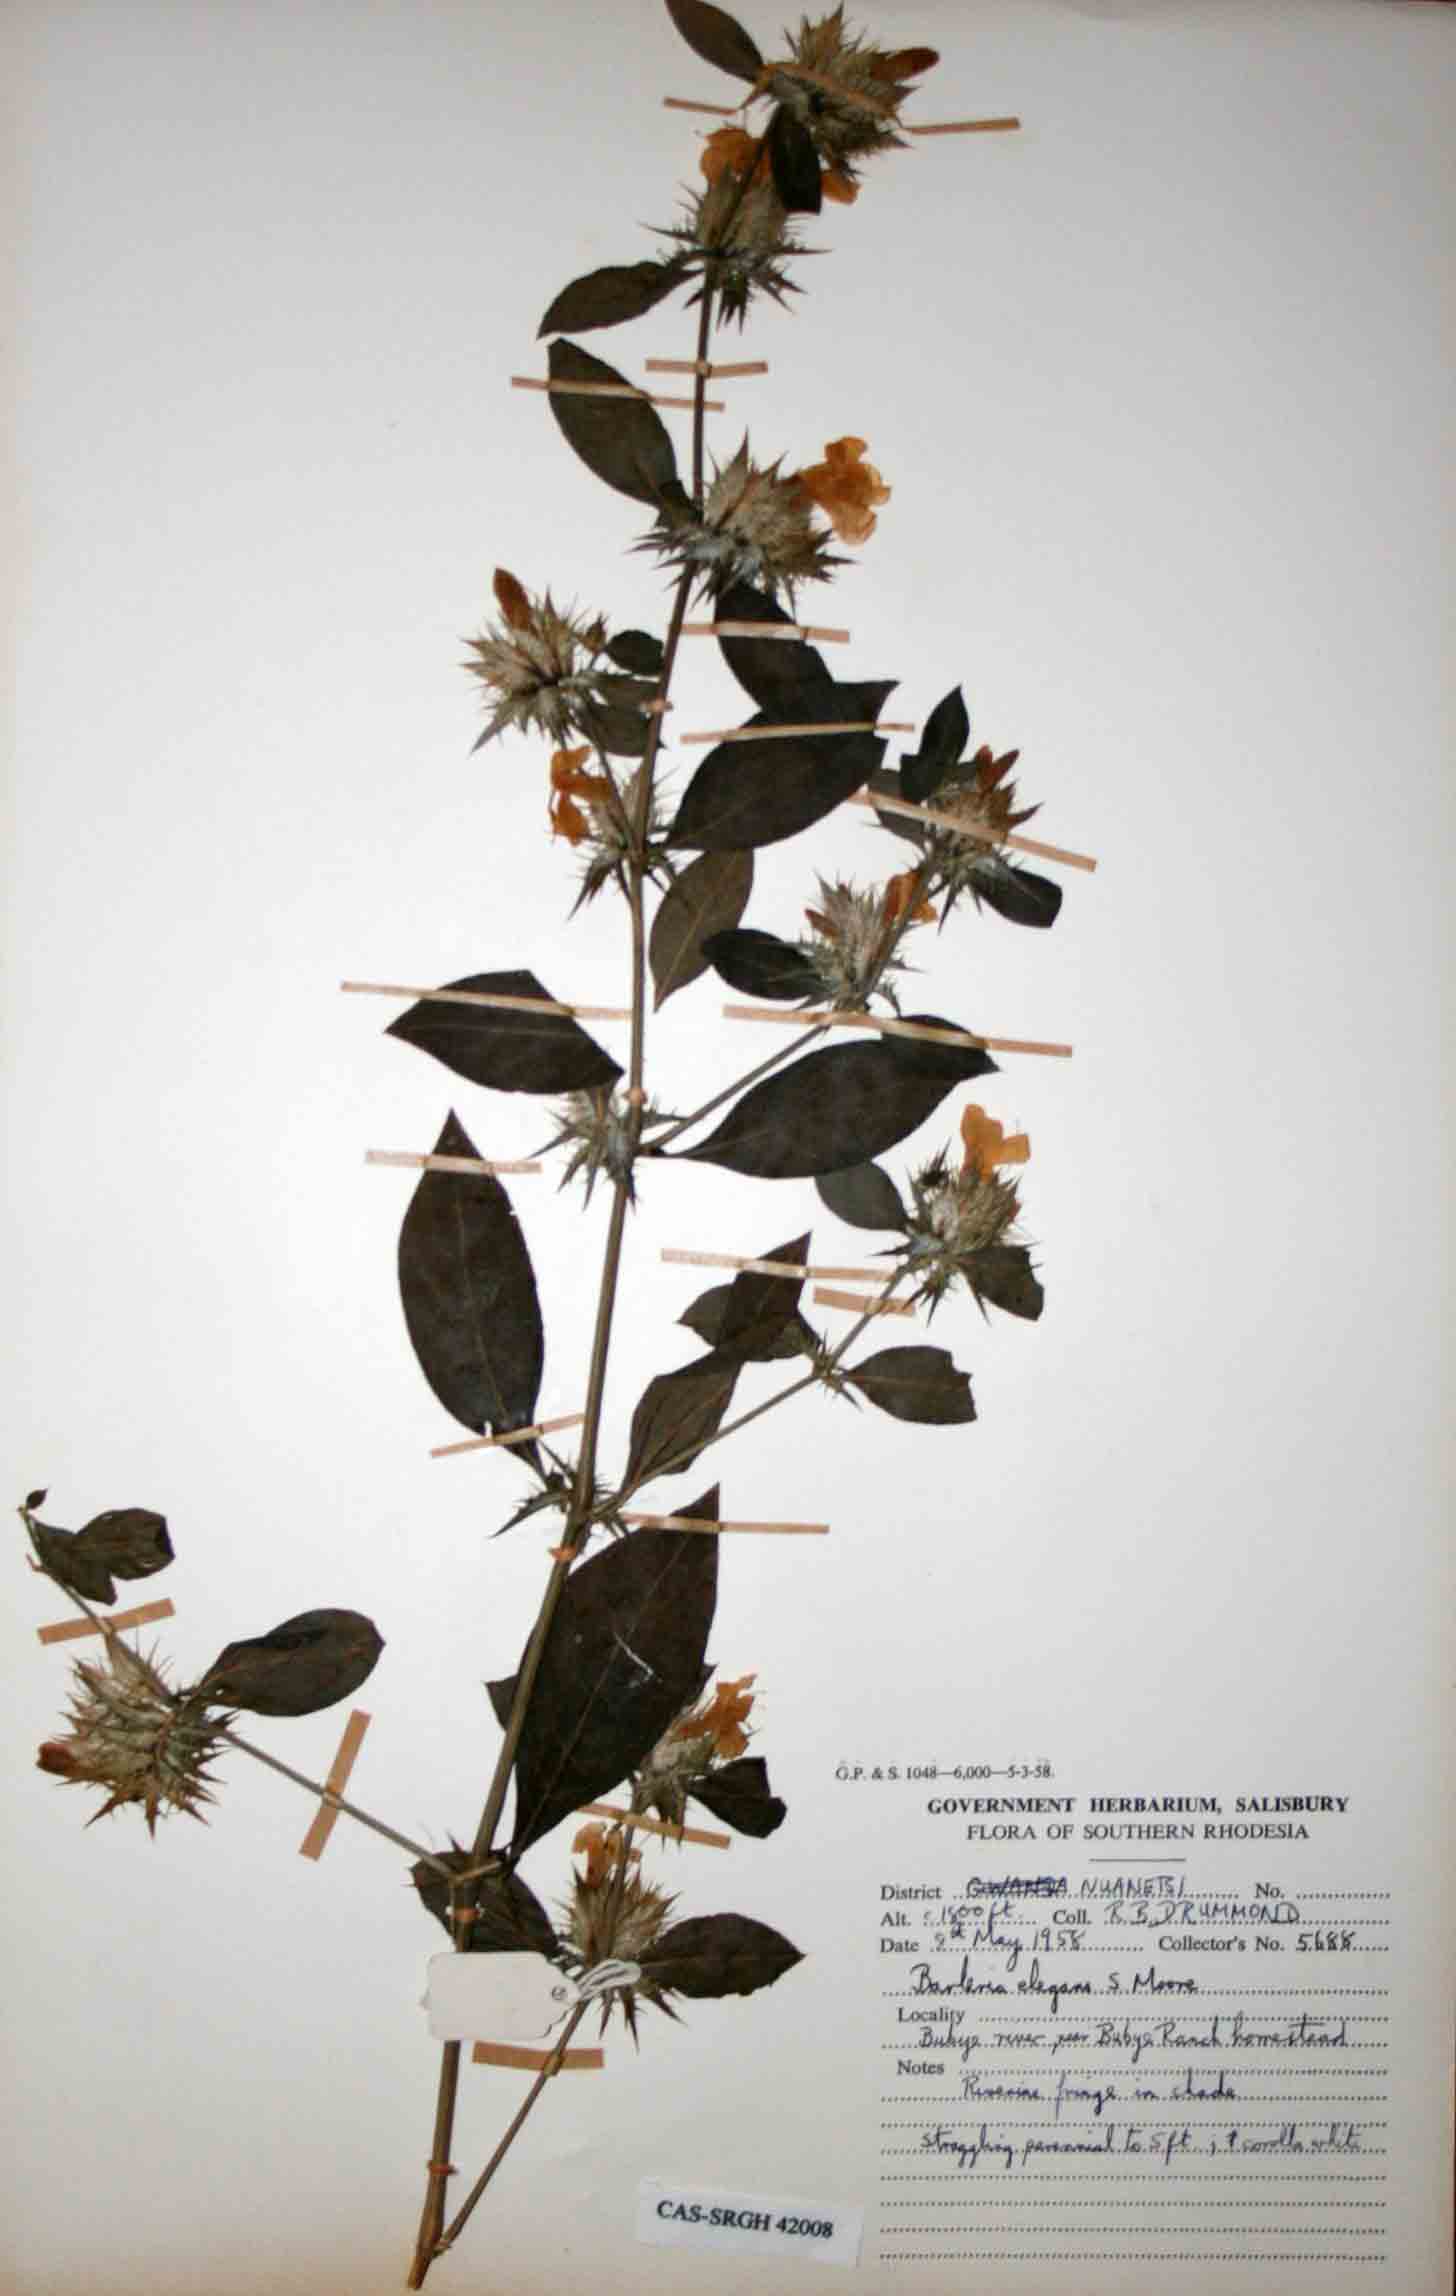 Barleria elegans subsp. orientalis